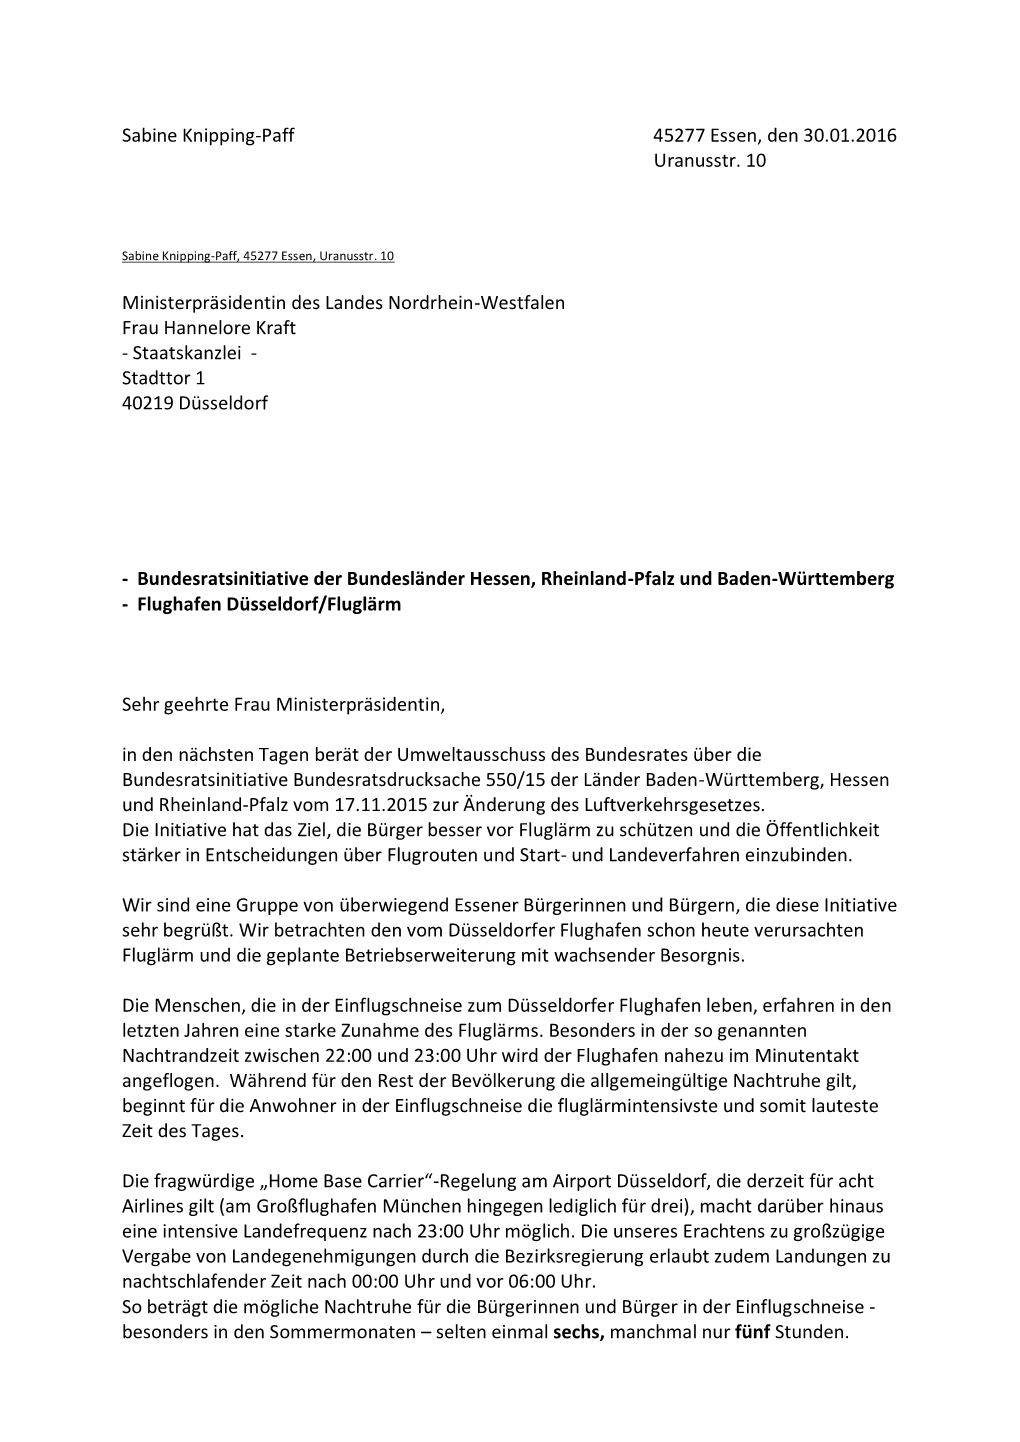 Sabine Knipping-Paff 45277 Essen, Den 30.01.2016 Uranusstr. 10 Ministerpräsidentin Des Landes Nordrhein-Westfalen Frau Hannel